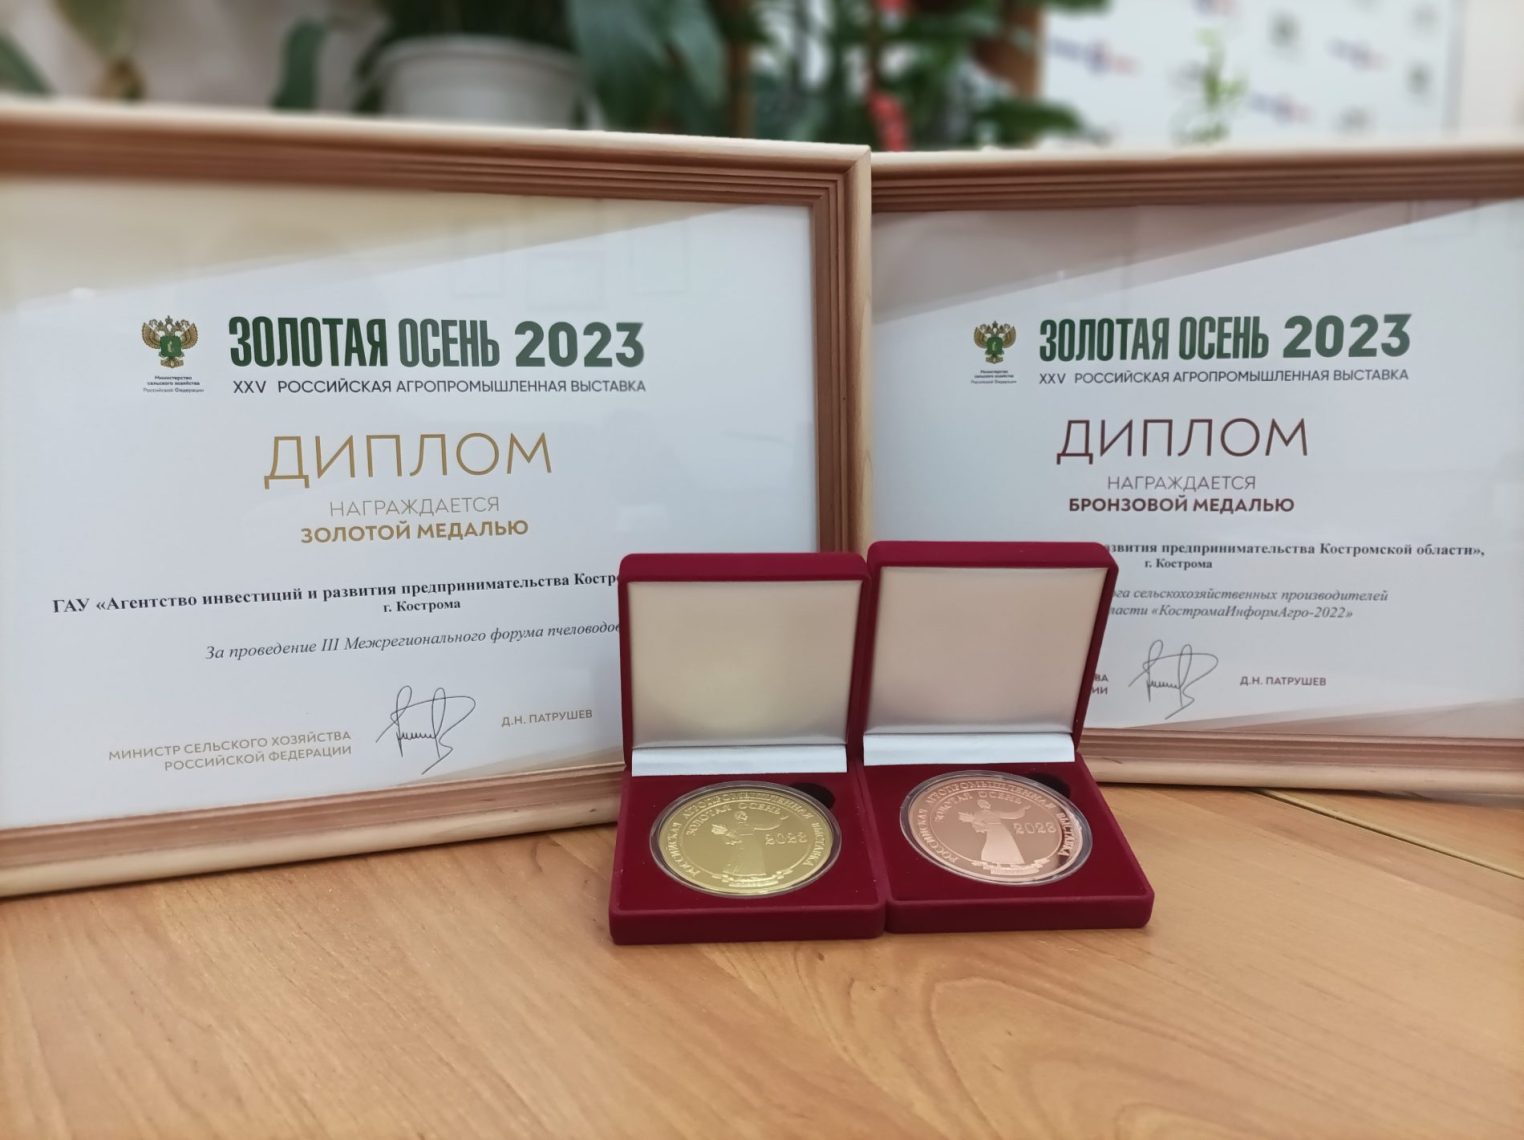 Центр компетенций Костромской области получил высокие награды на XXV Российской агропромышленной выставке «Золотая осень 2023»